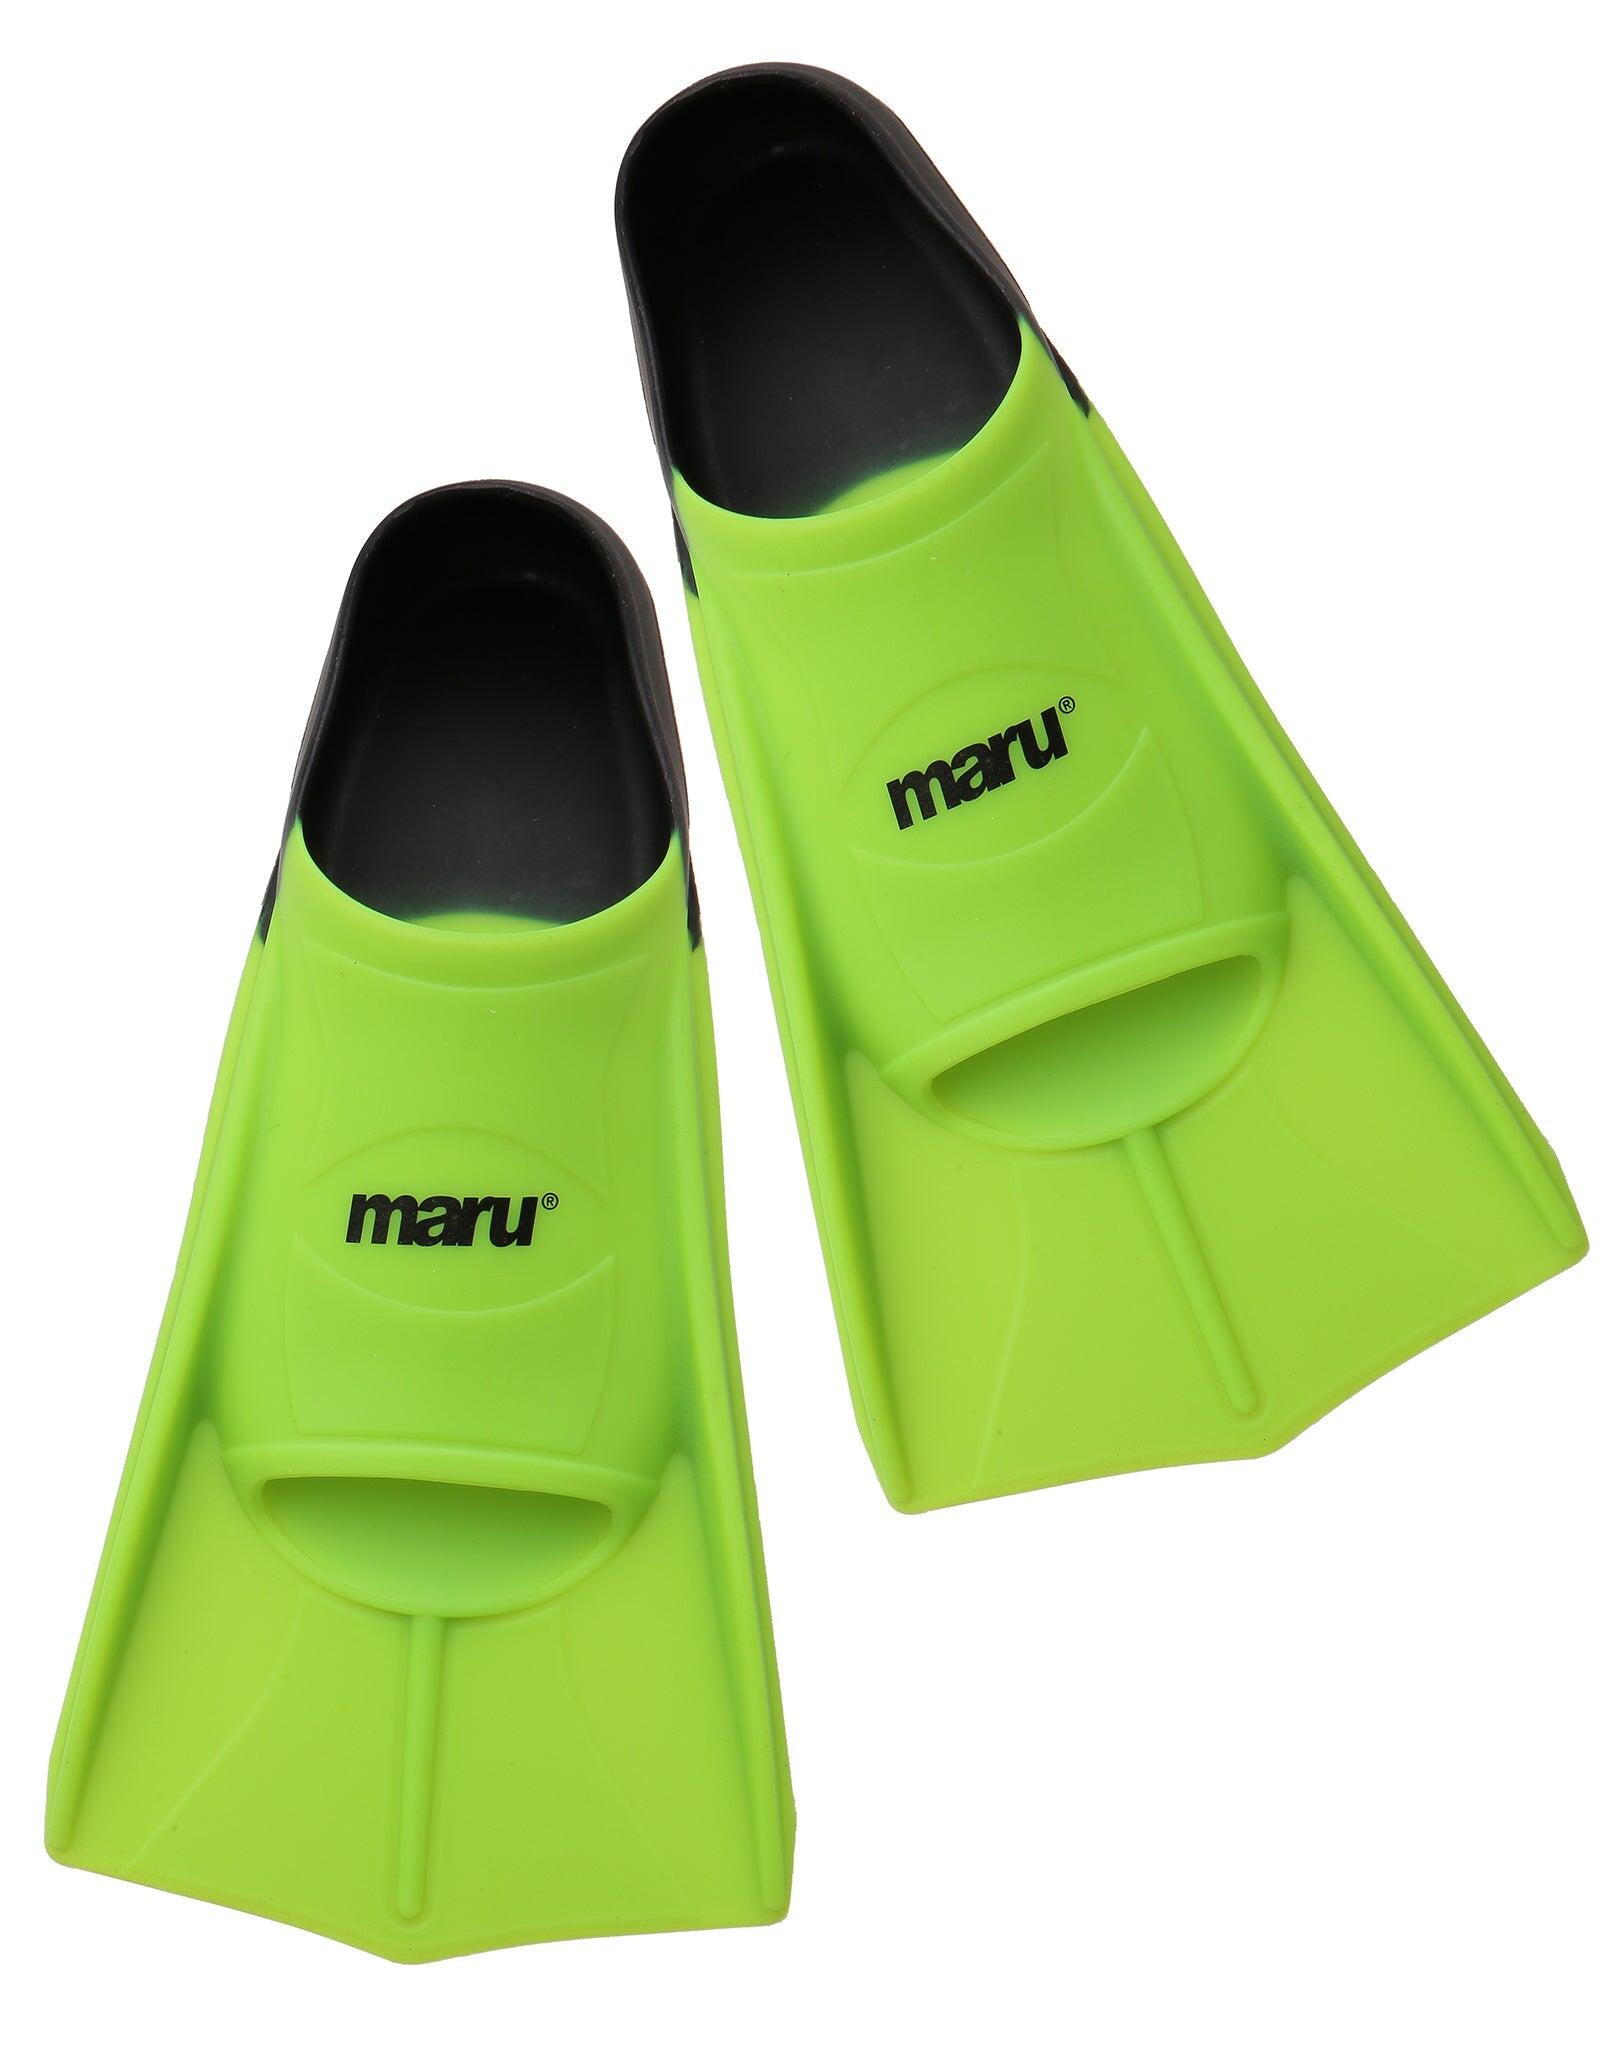 MARU Maru Training Fins - Lime/Black